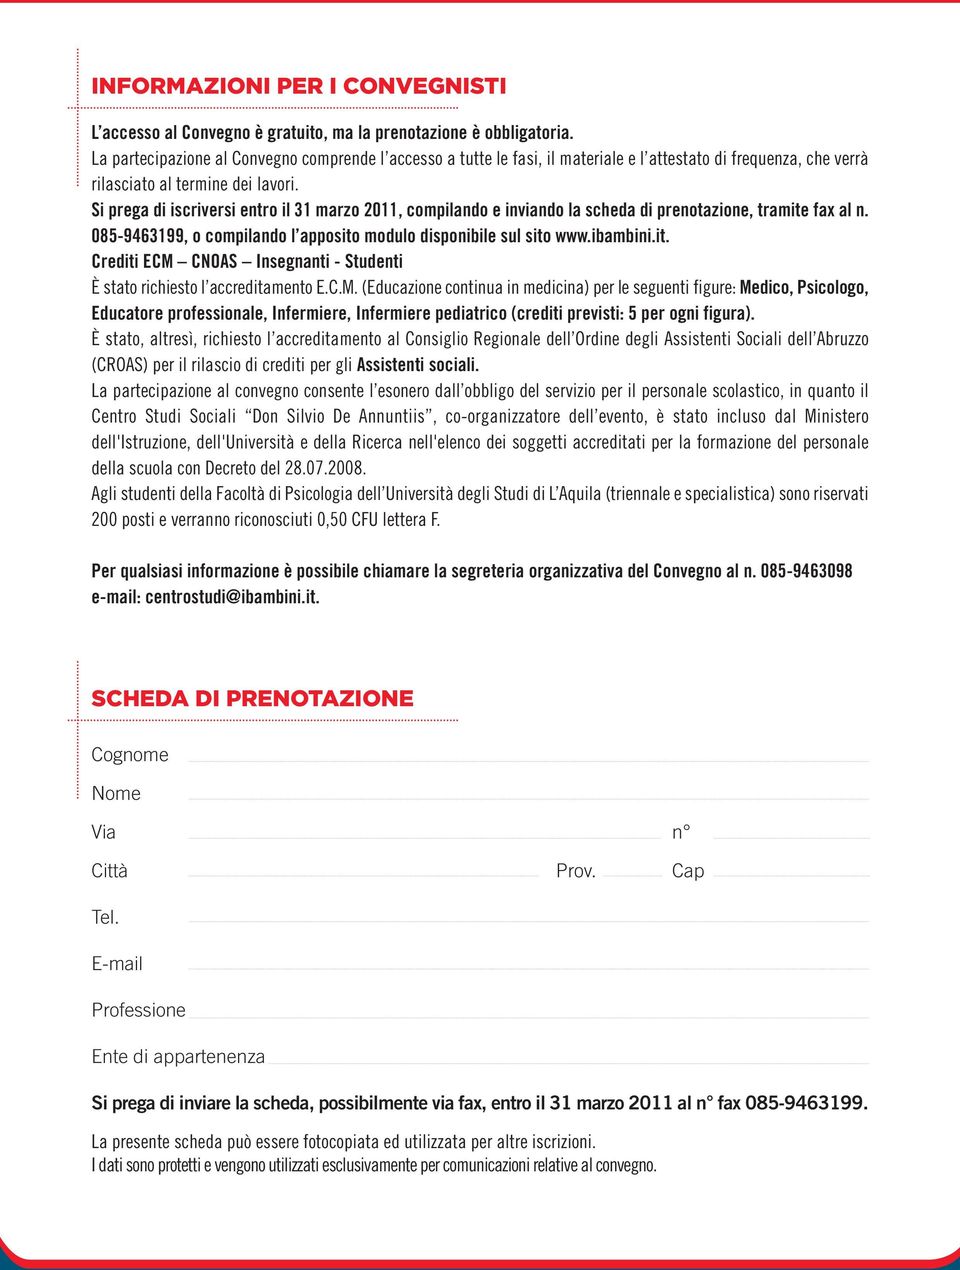 Si prega di iscriversi entro il 31 marzo 2011, compilando e inviando la scheda di prenotazione, tramite fax al n. 085-9463199, o compilando l apposito modulo disponibile sul sito www.ibambini.it. Crediti ECM CNOAS Insegnanti - Studenti È stato richiesto l accreditamento E.